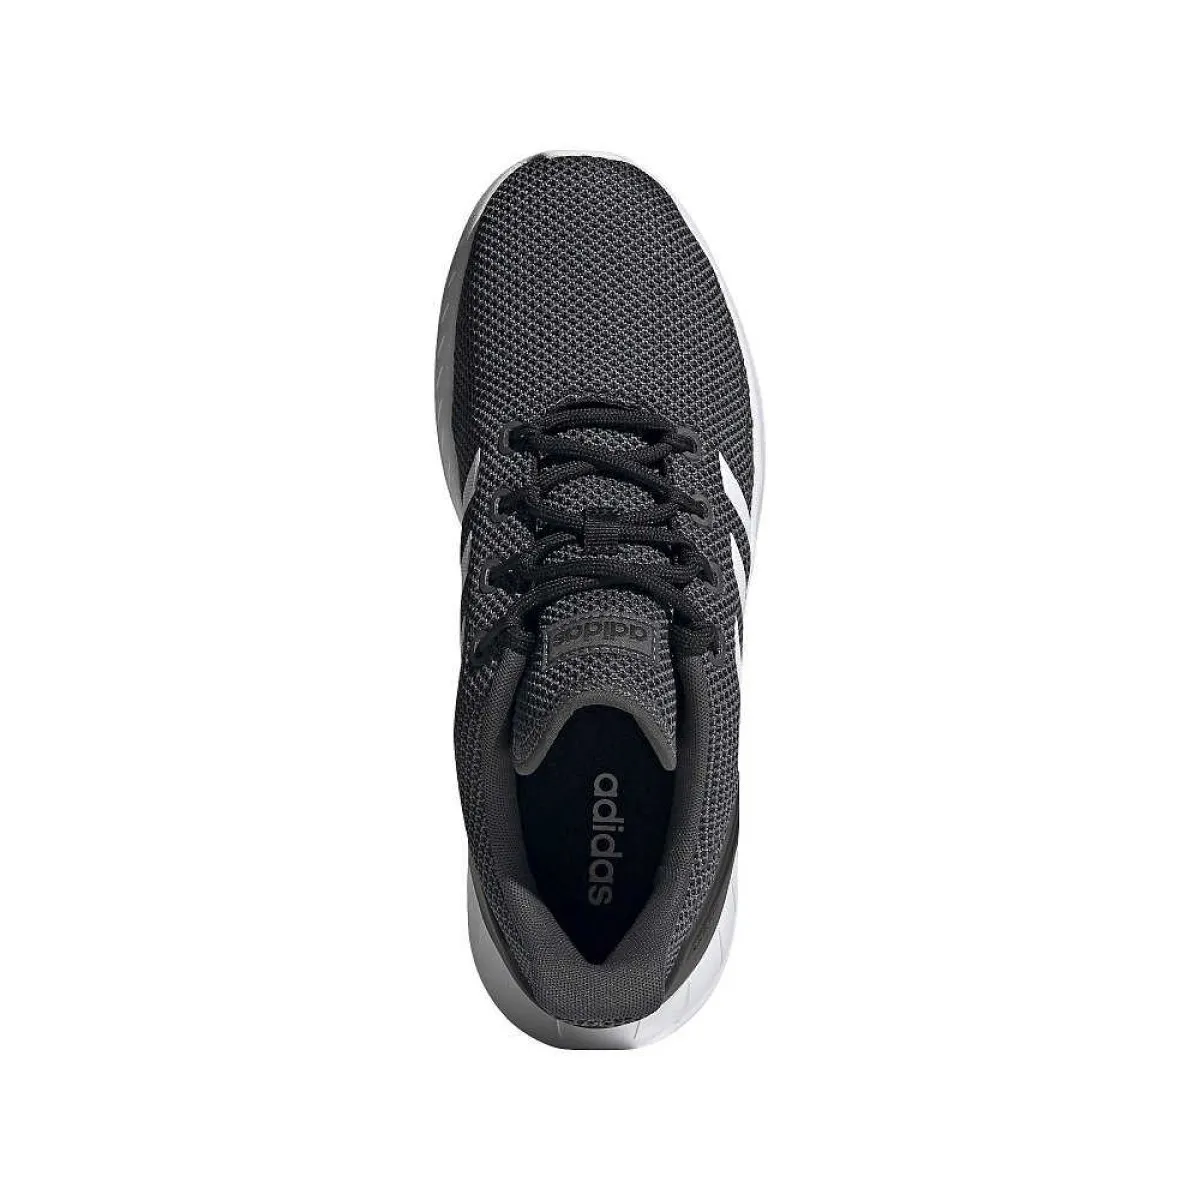 adidas Schuhe Speed Trainer schwarz weiss